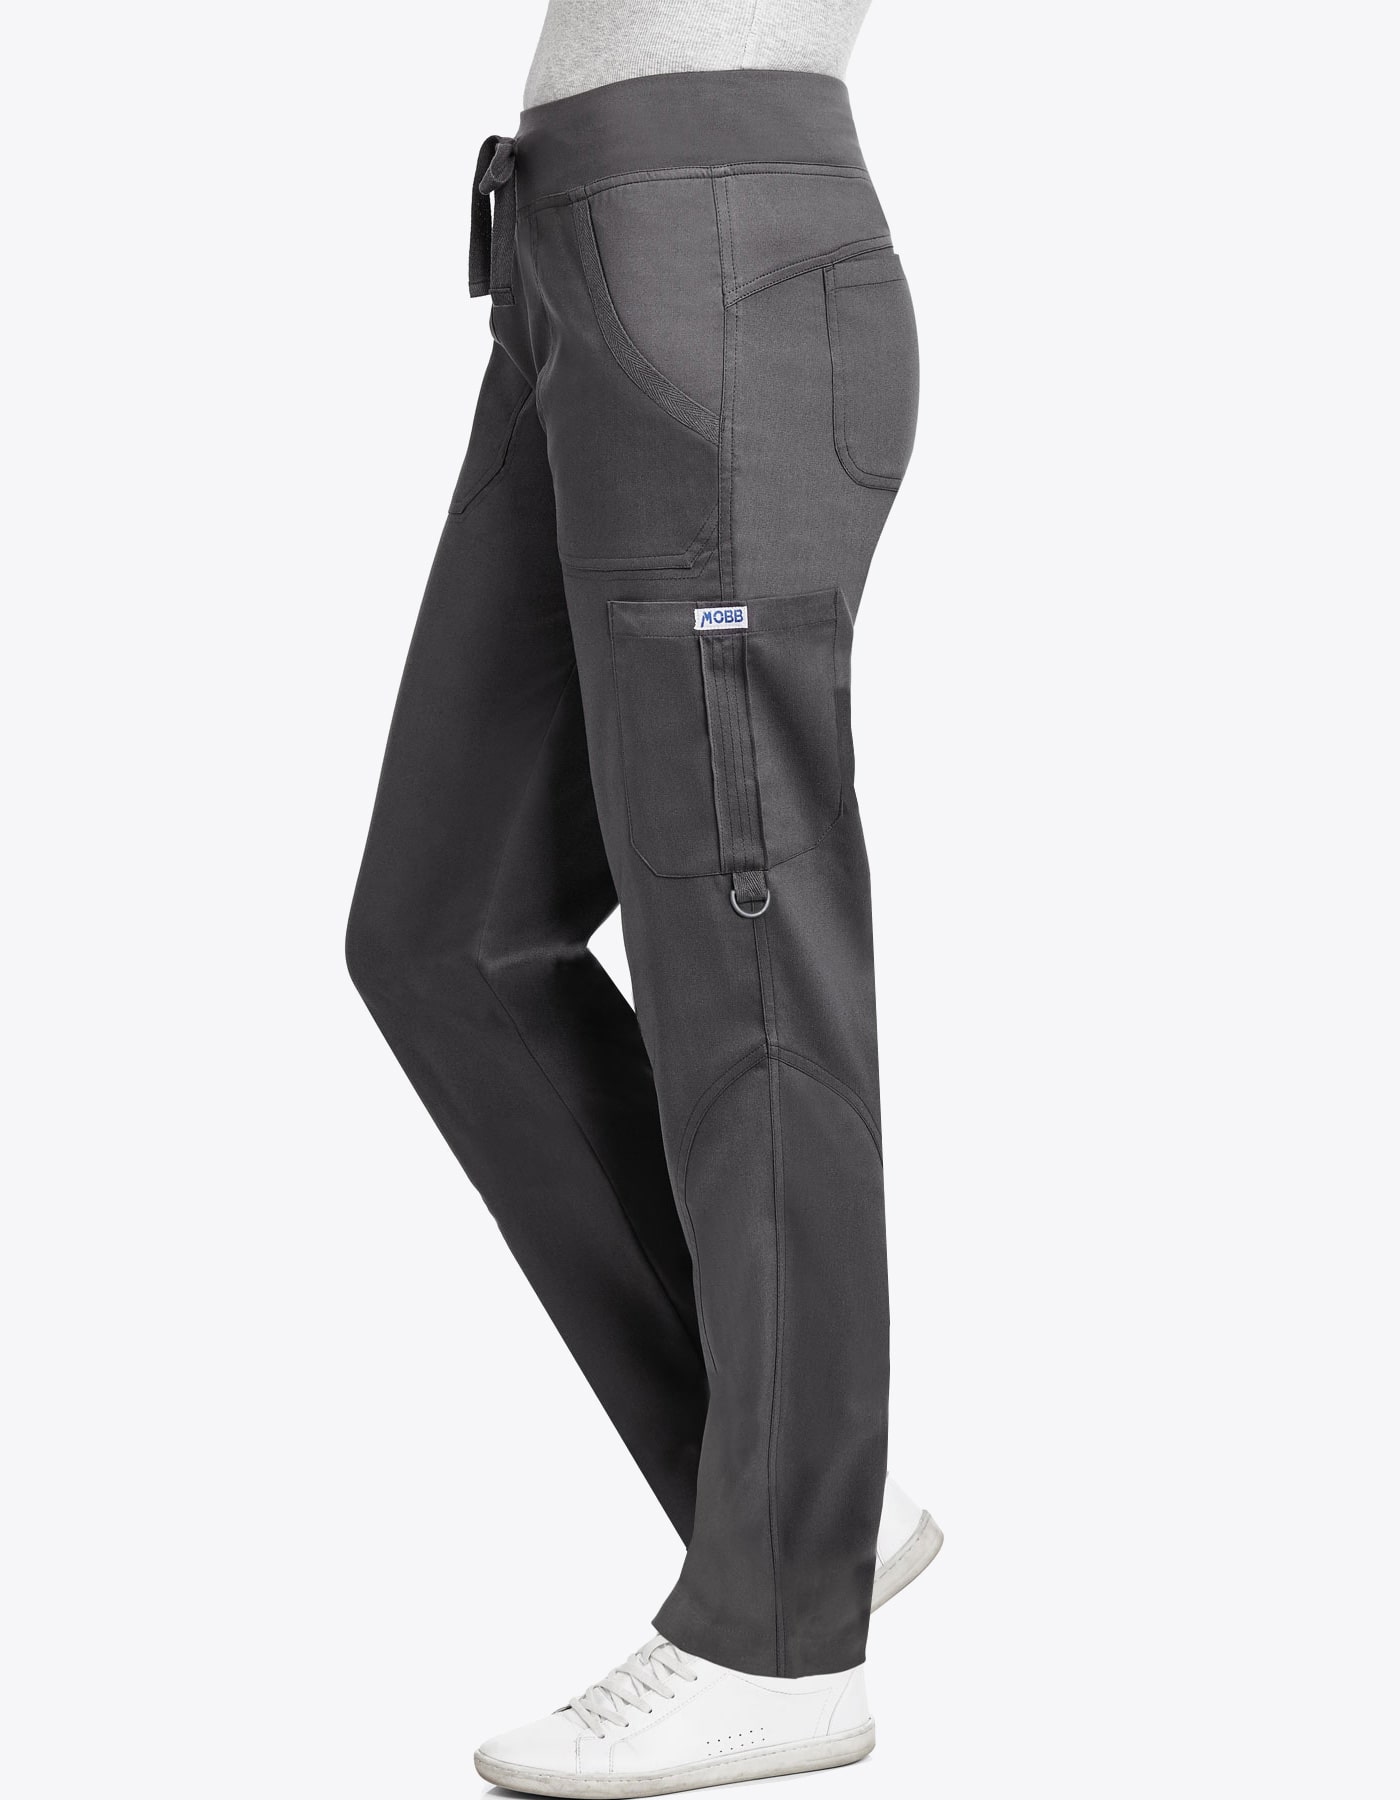 Mobb Uniforms - 409PT -Men Tall Scrub Pants